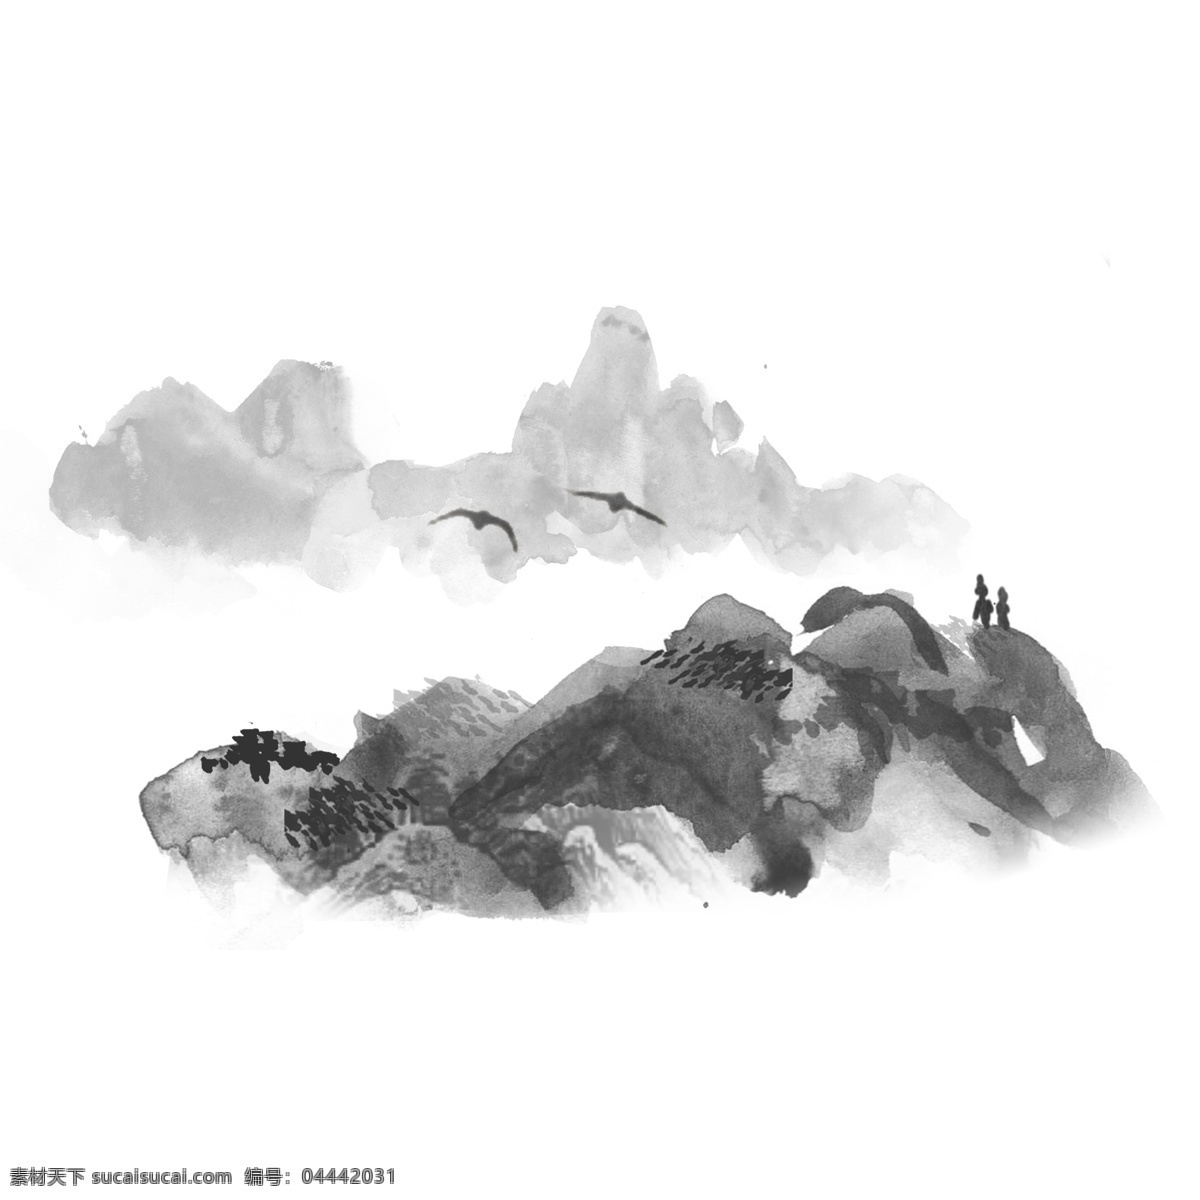 水墨画 简约 山水 淡雅 中国 传统 画 可商用 传统画 黑白 文雅 仙境 高山 泼墨 古典风 登山